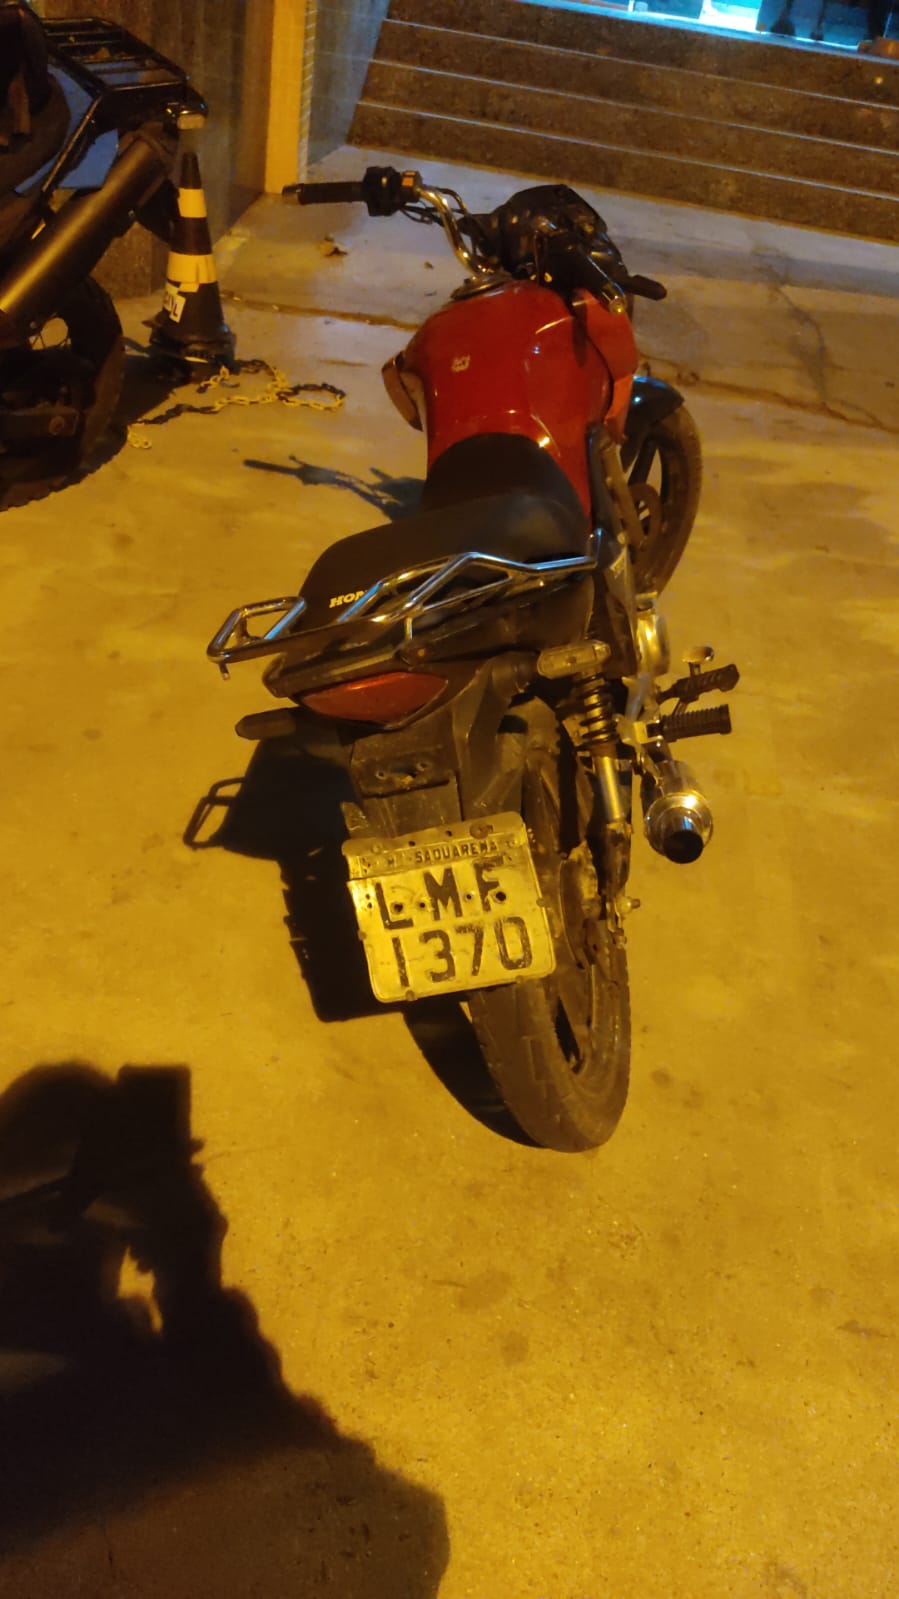 Motocicleta com numeração adulterada é apreendida em Arauama